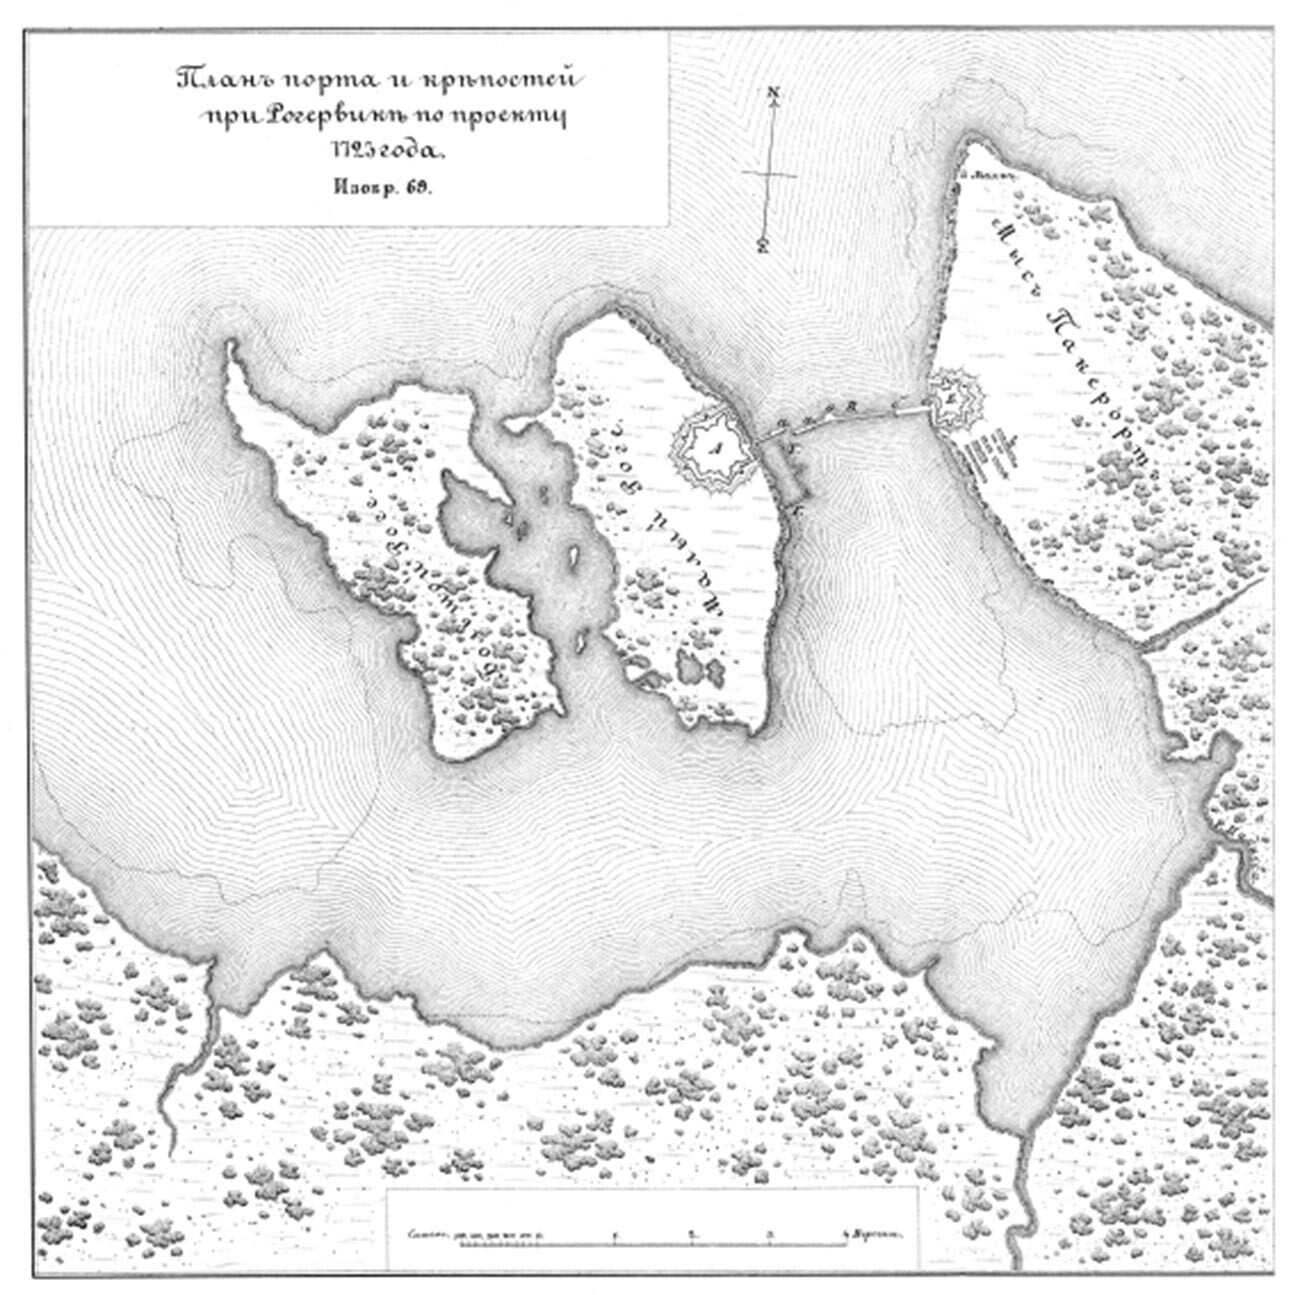 Rogervik-Bucht, 1723.